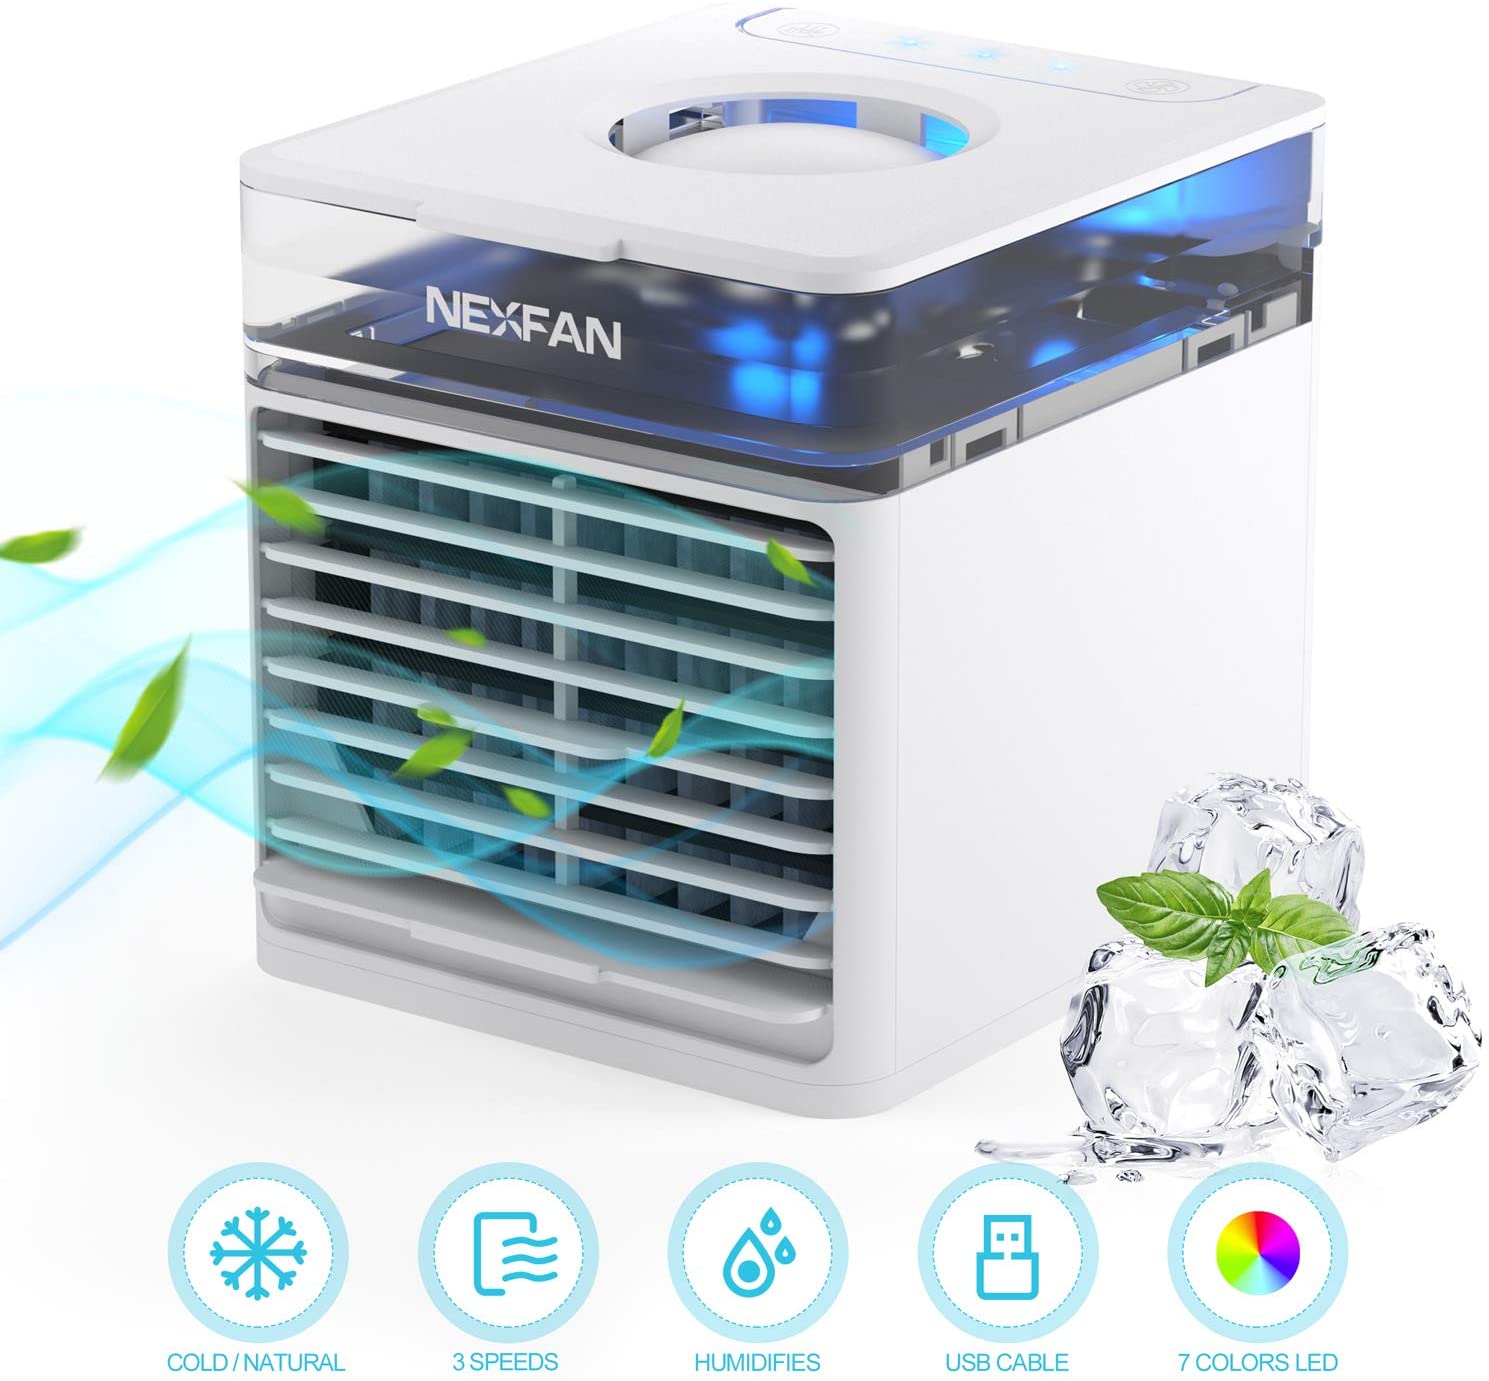 NexFan Taşınabilir El Çok Fonksiyonlu Hızlı Soğutma Klima Fanı Arındırıcı Hava Kokuyu Ortadan Kaldırın Üç Modlu USB Şarj UV Versiyonu Ofis Ev İçin - Beyaz